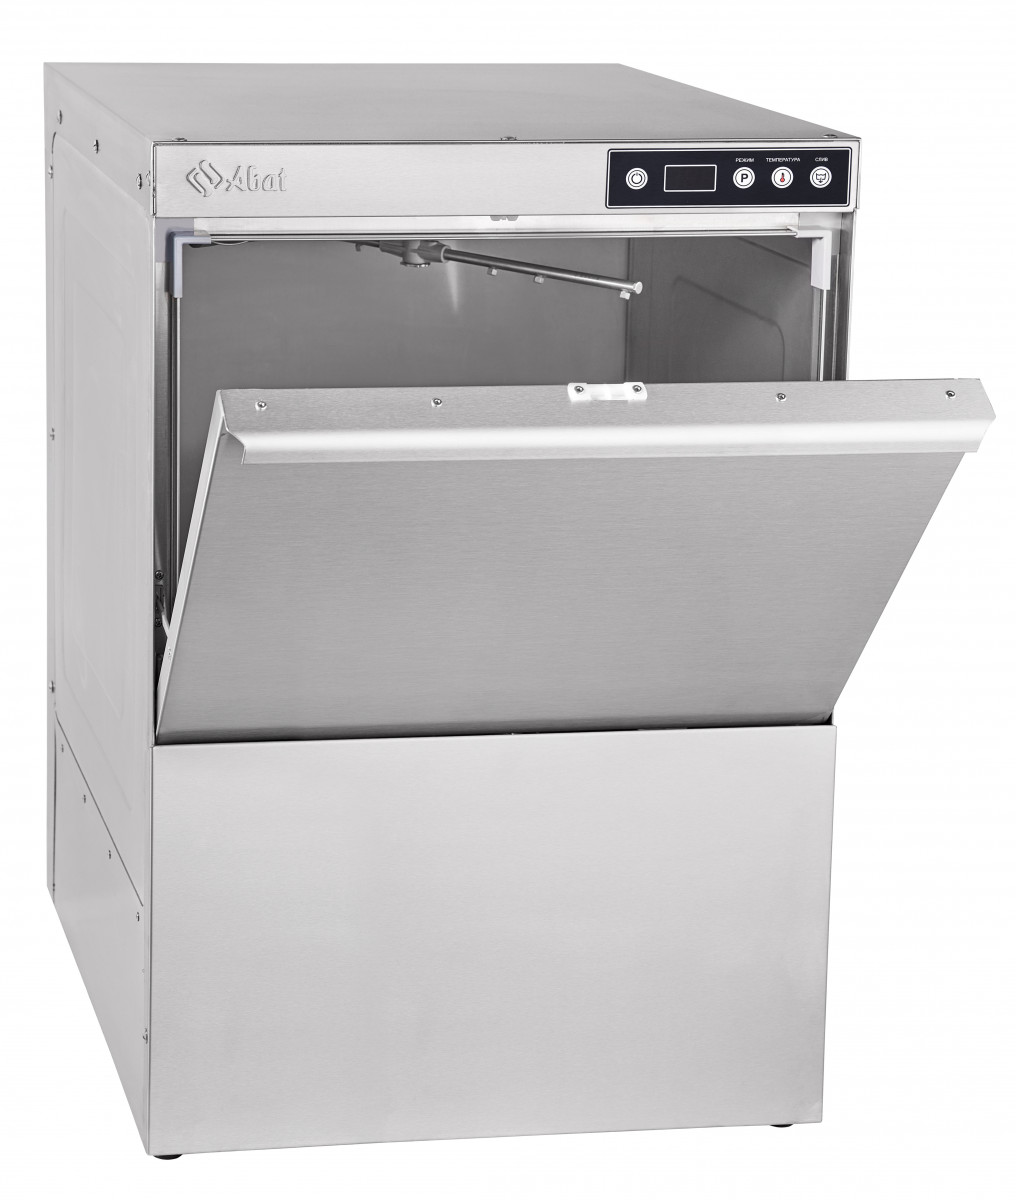 Фронтальная посудомоечная машина МПК-500Ф-01-230